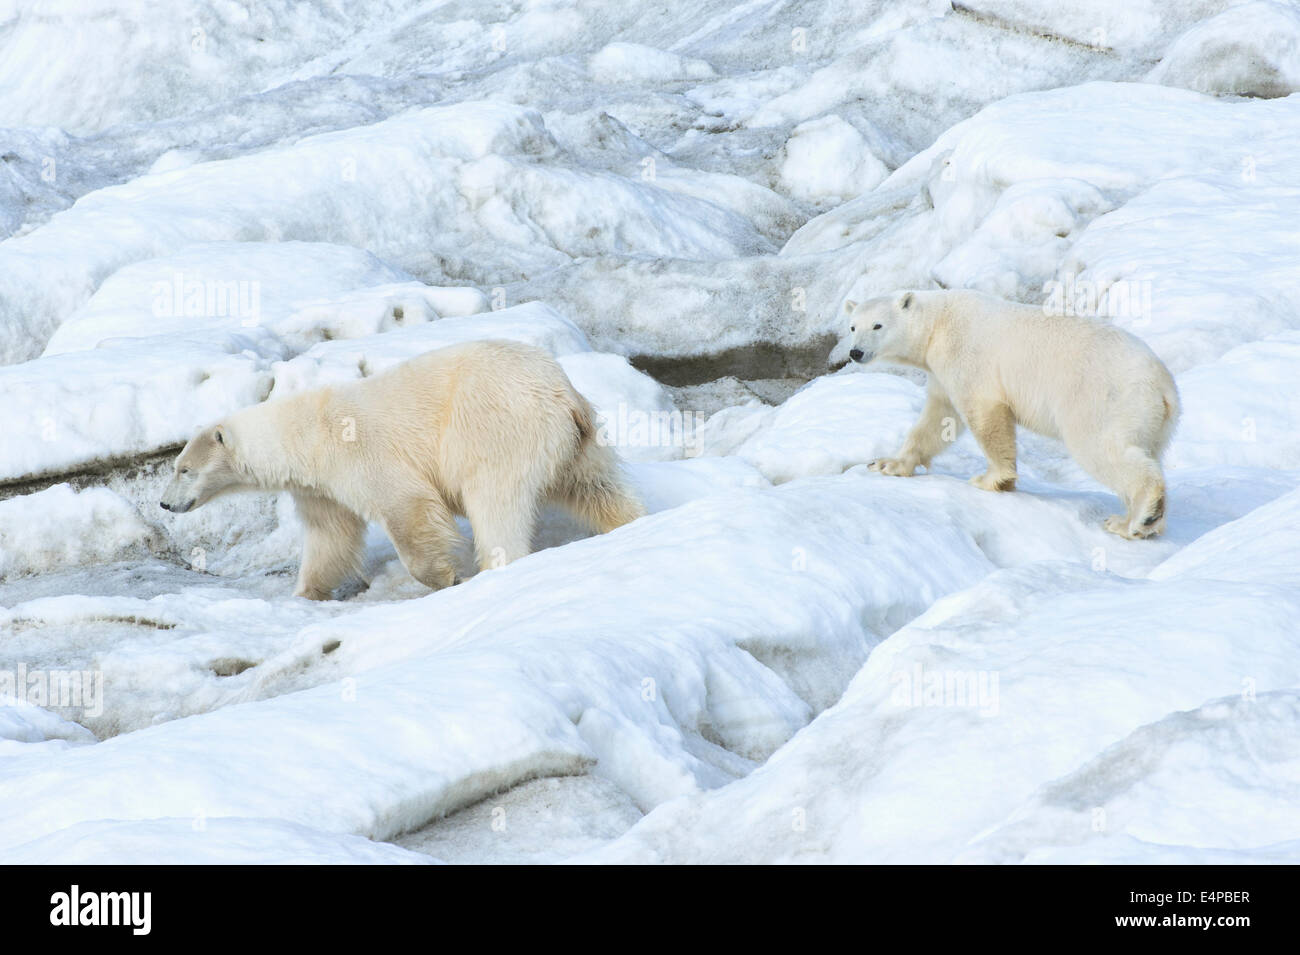 Mère ours polaire avec un deux ans cub (Ursus maritimus), marcher sur la glace de mer de l'île Wrangel, Chuckchi, Extrême-Orient russe Banque D'Images